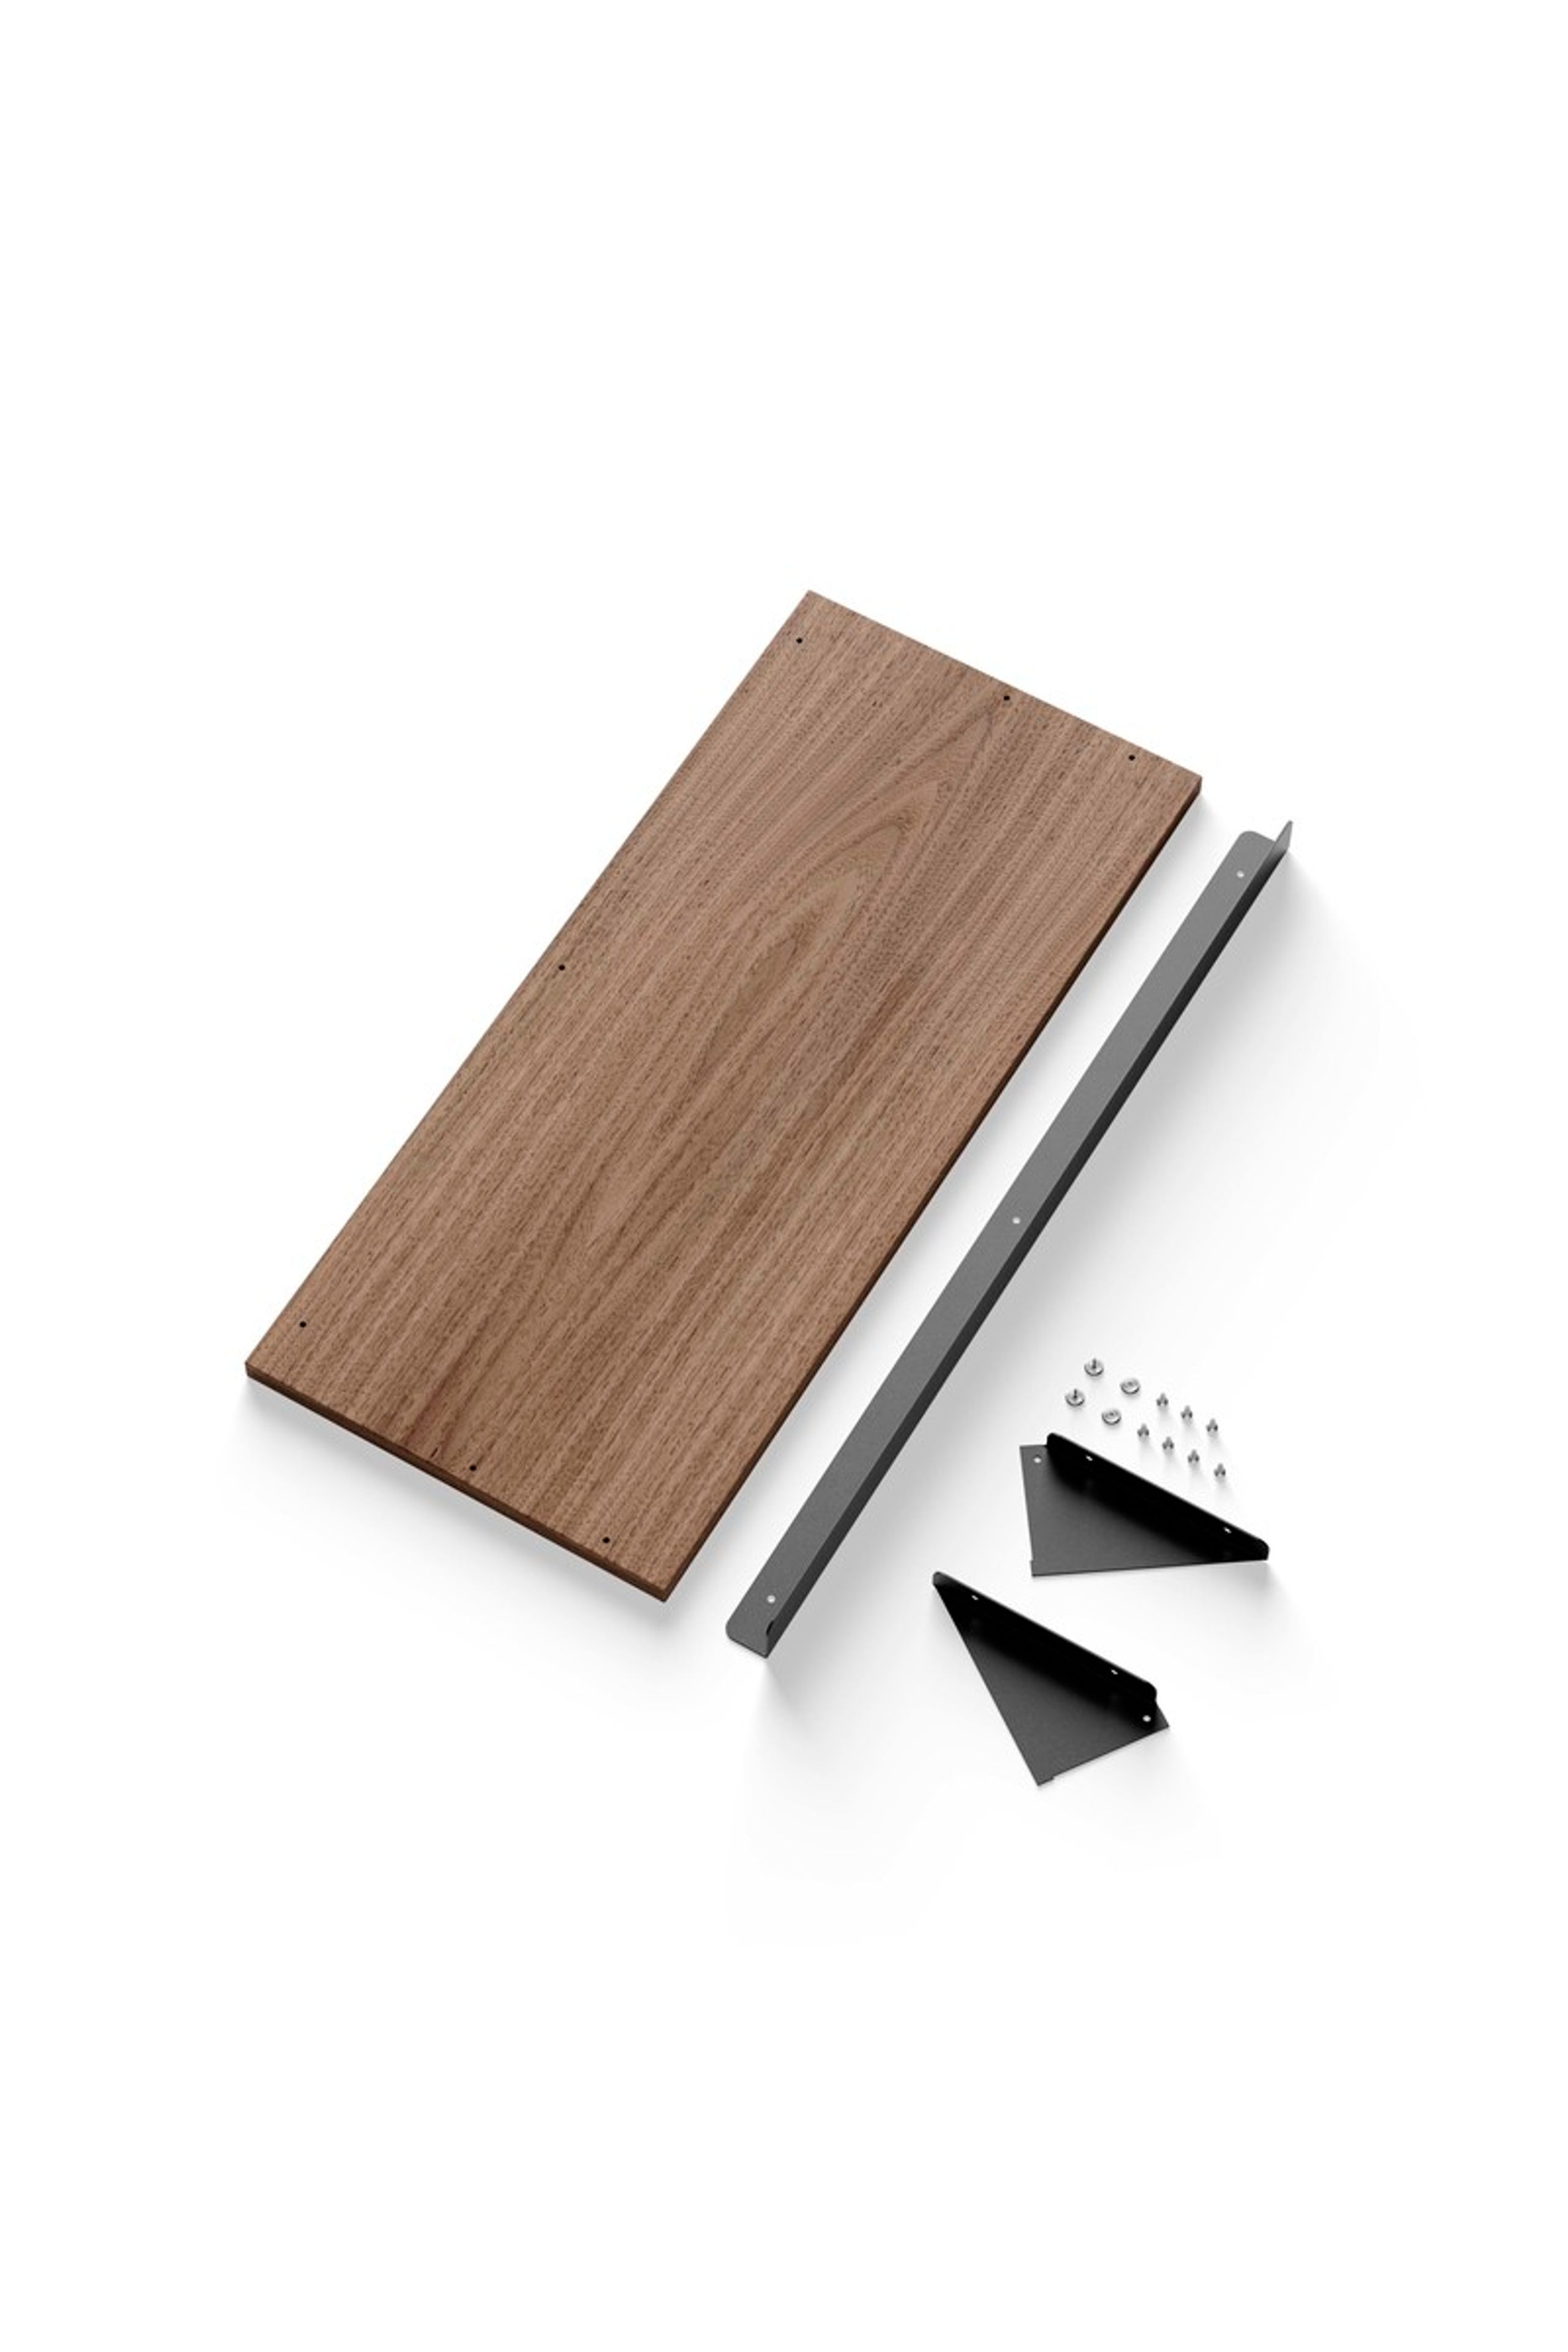 New Works - Plank - NEW WORKS SHELVING SYSTEM - New Works Magazine Shelf Kit - Walnut / Black